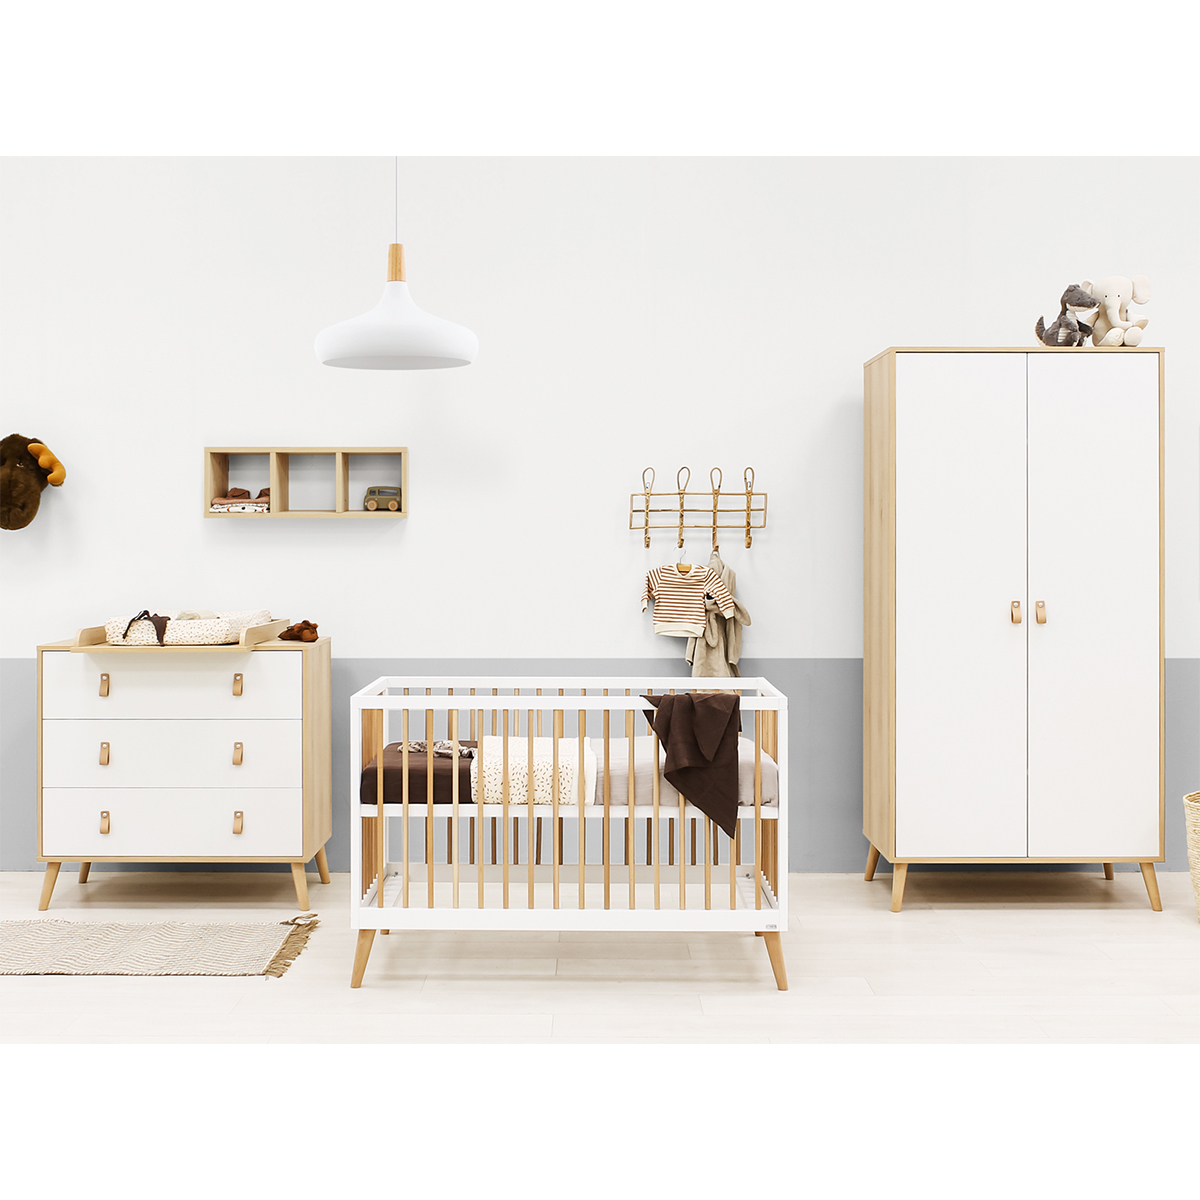 Chambre complète lit bébé 60x120 commode à langer et armoire 2 portes Toi Toi Kids Jort - Blanc et bois